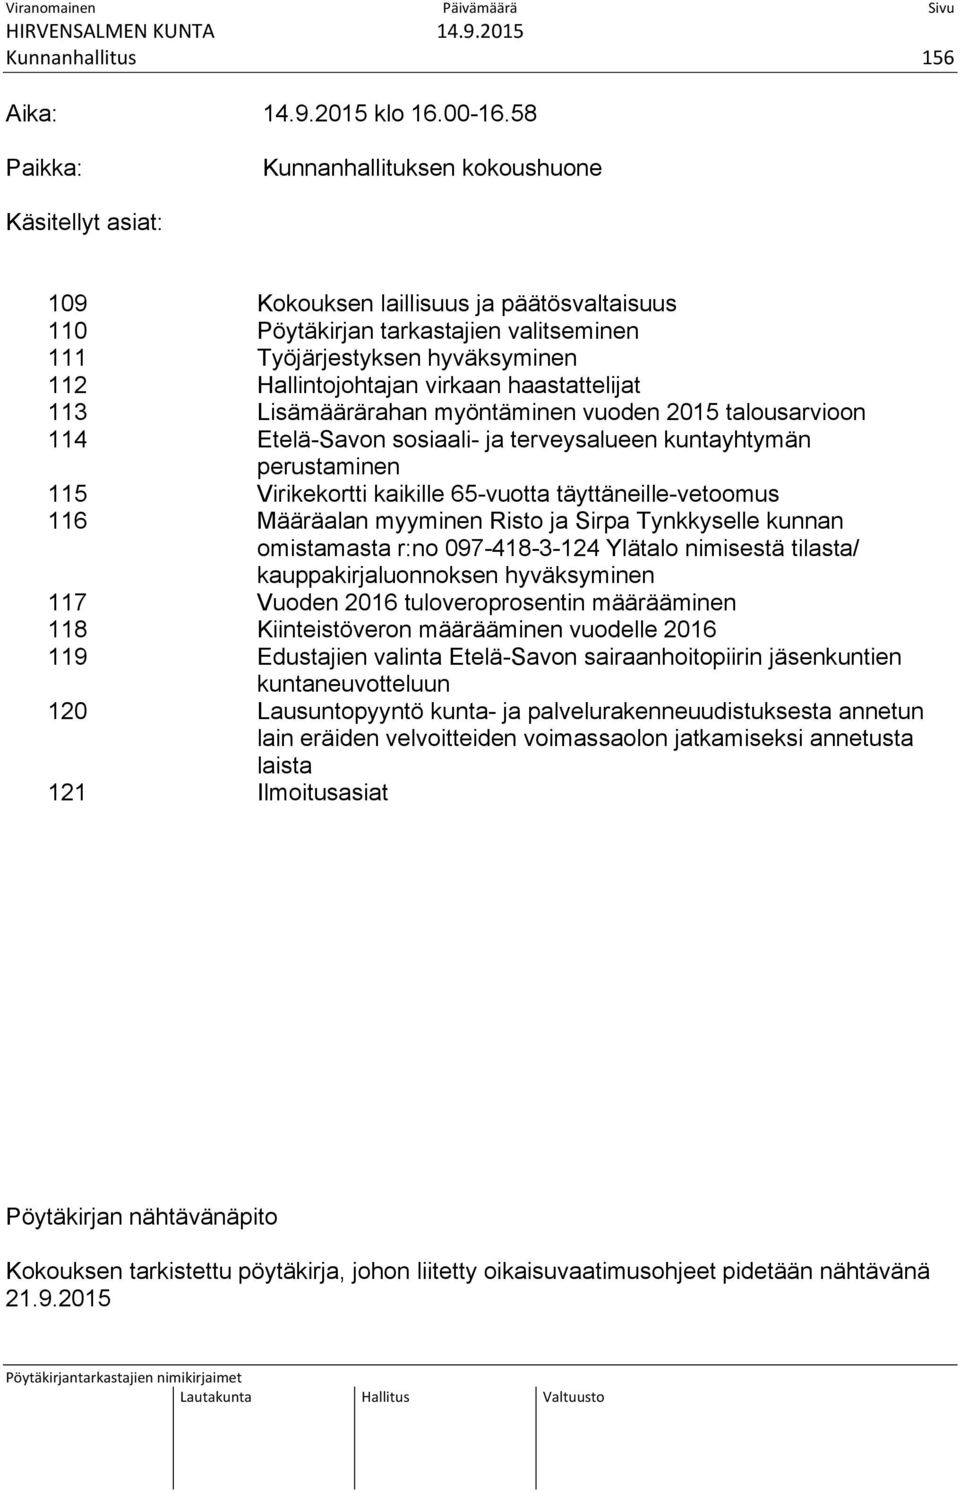 virkaan haastattelijat 113 Lisämäärärahan myöntäminen vuoden 2015 talousarvioon 114 Etelä-Savon sosiaali- ja terveysalueen kuntayhtymän perustaminen 115 Virikekortti kaikille 65-vuotta